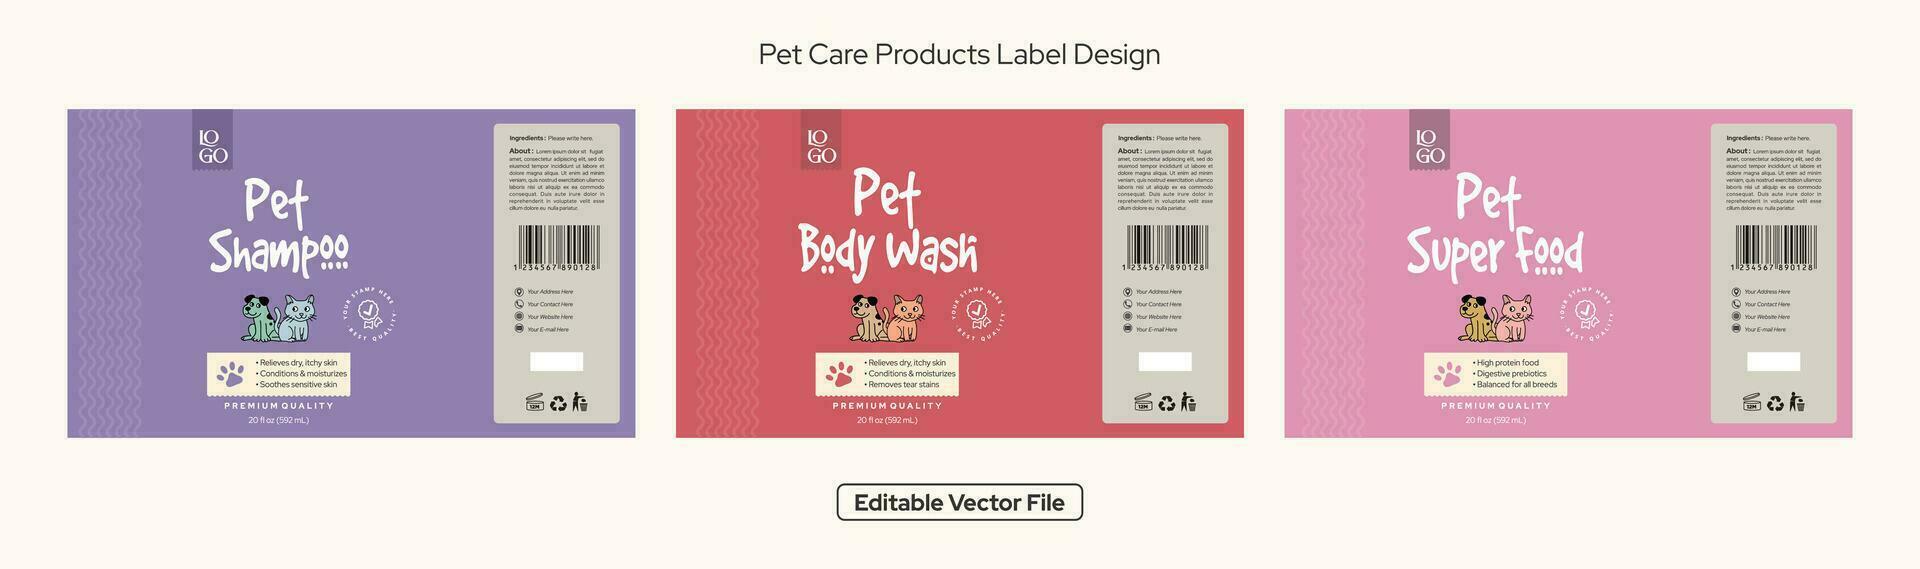 mascota champú etiqueta diseño, mascota cuerpo lavar etiqueta diseño, mascota comida etiqueta embalaje diseño, perro champú, gato champú, editable vector archivo ilustración